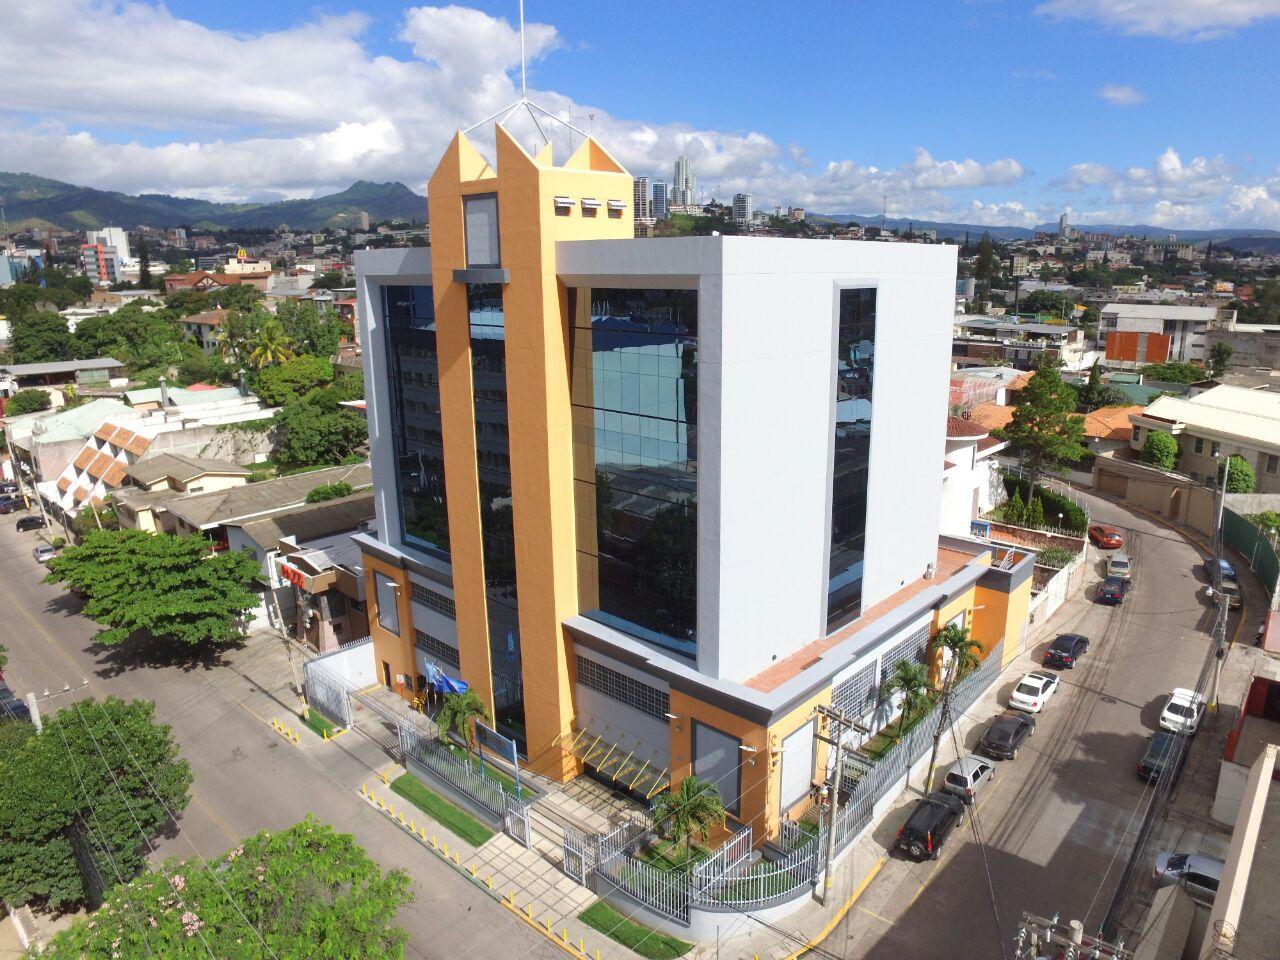 Mejores zonas donde alojarse en Tegucigalpa - Colonia Palmira y cerca de la embajada americana